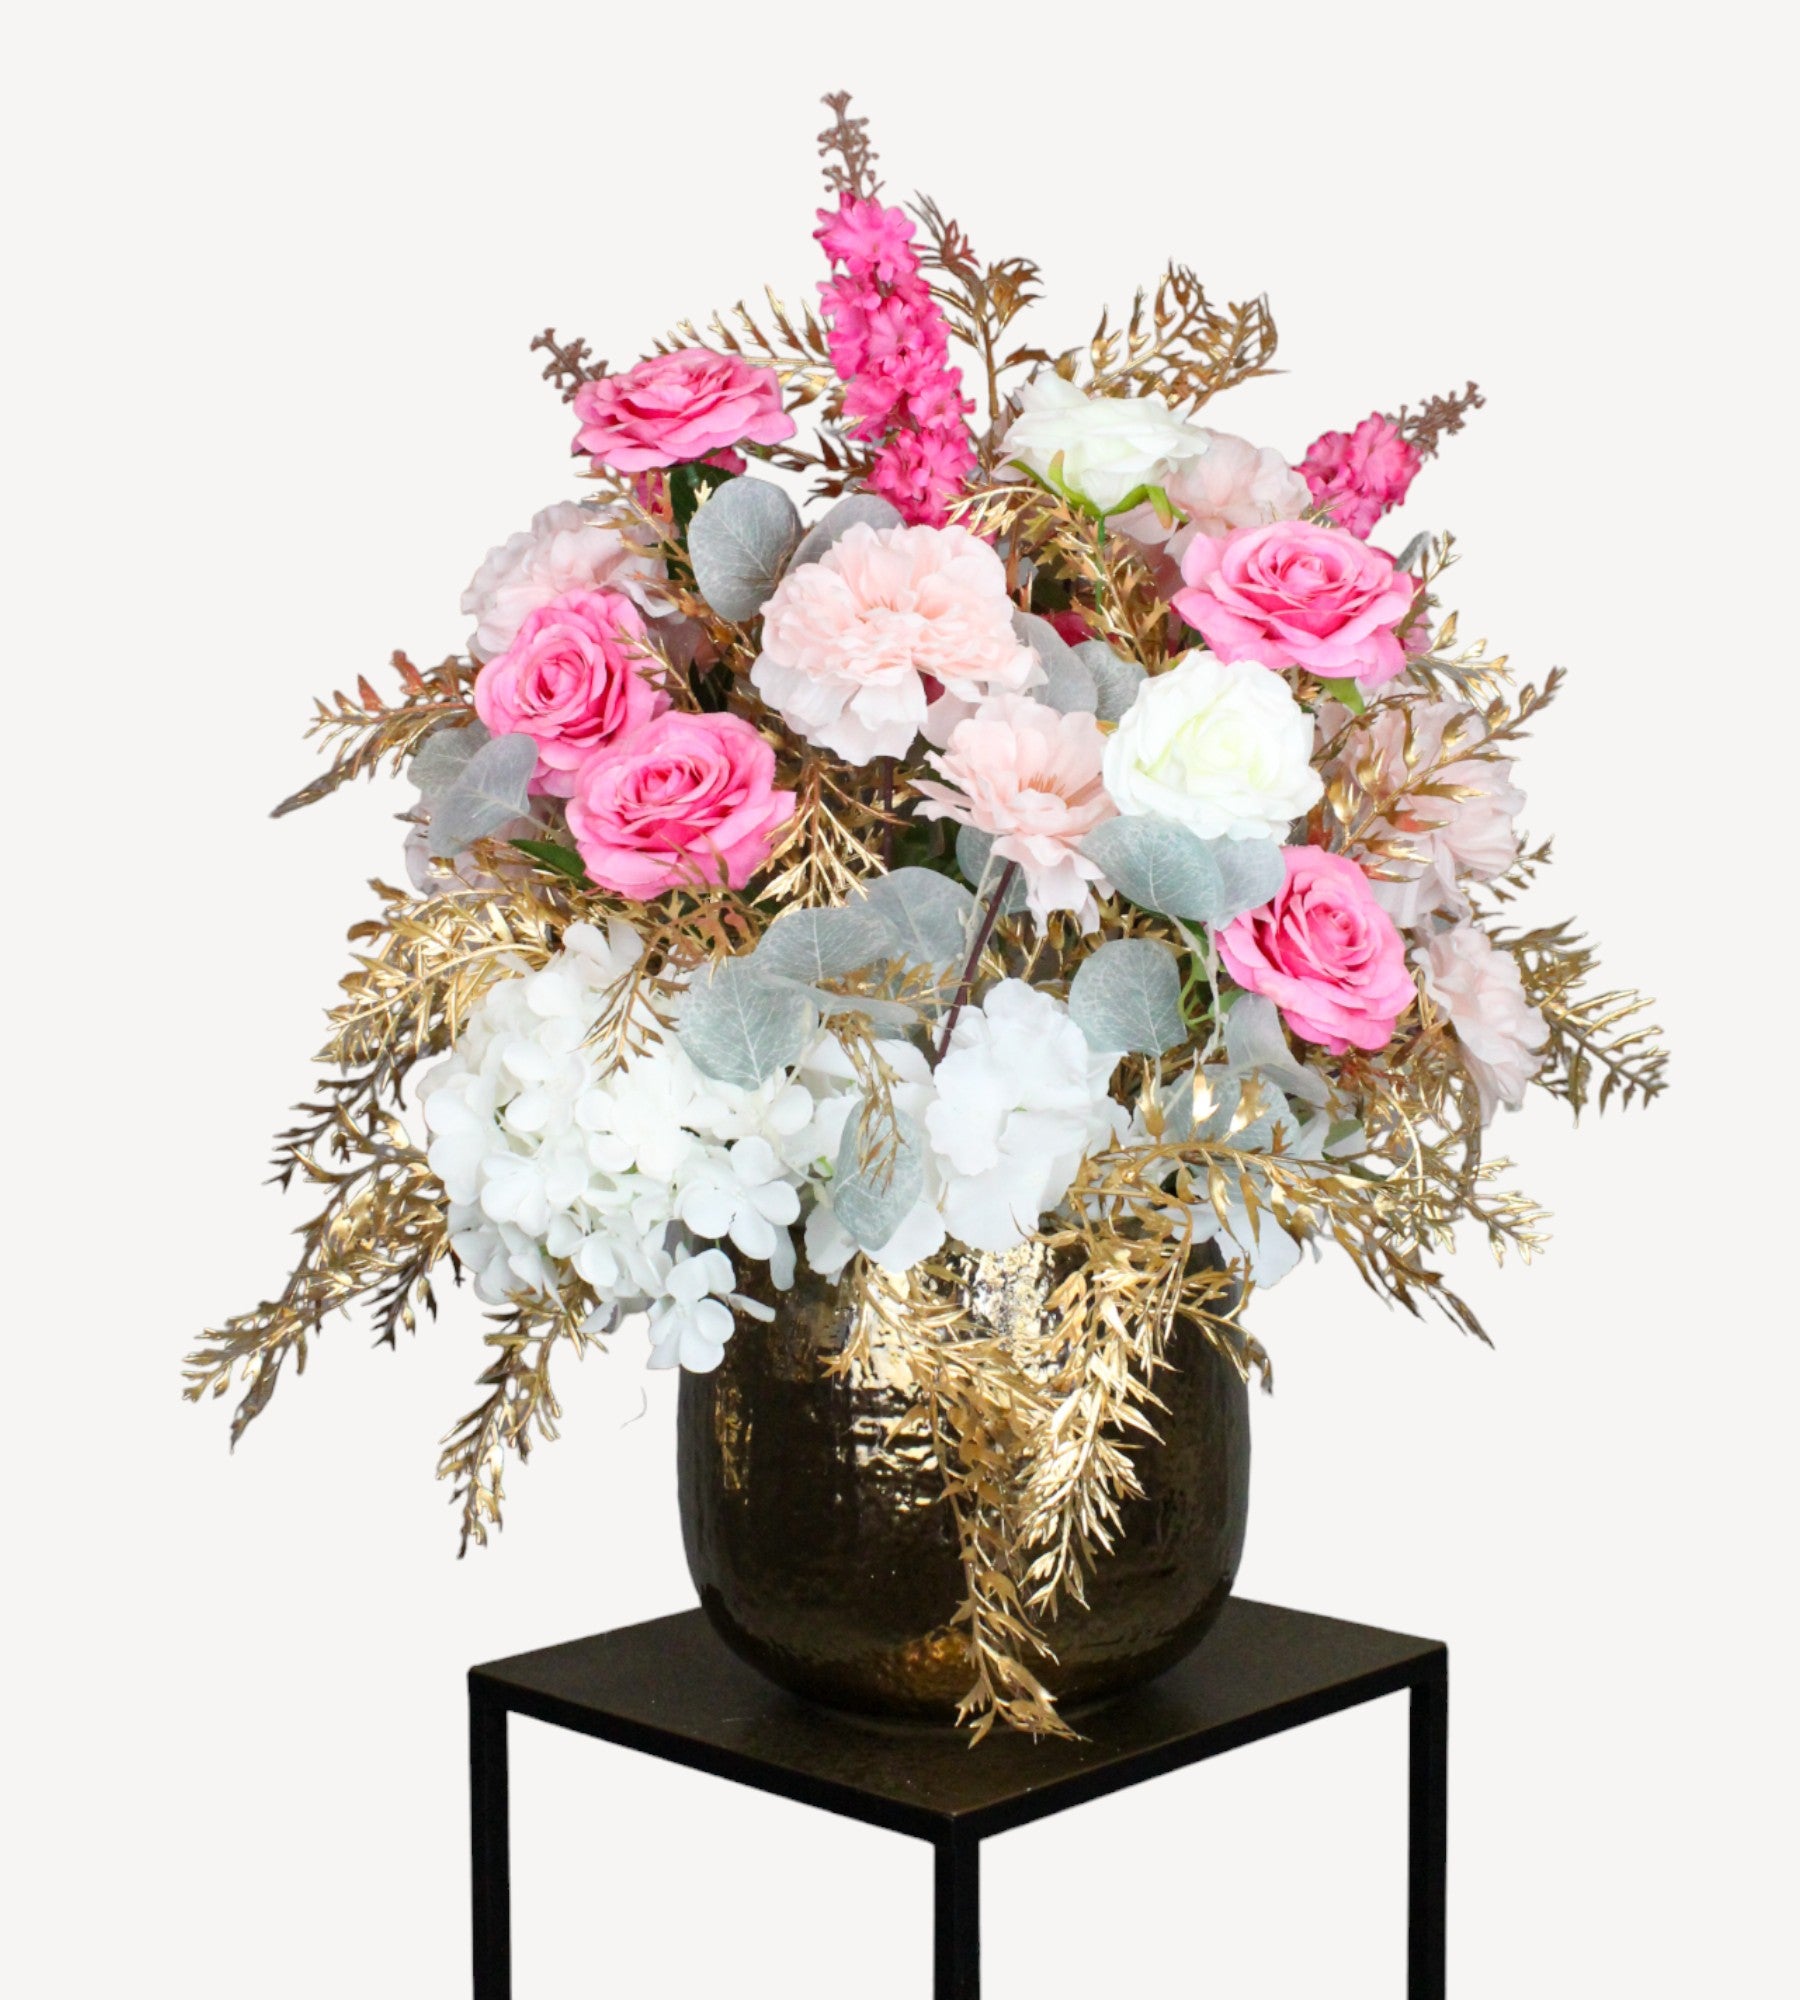 Breng stijl en elegantie in elke ruimte met onze zorgvuldig samengestelde kunst bloemballen van zijde. Deze luxueuze schikking van roze en witte zijden bloemen, geplaatst in een opvallende gouden vaas, biedt een tijdloze decoratie die geen onderhoud vereist. Perfect voor iedereen die op zoek is naar een duurzaam alternatief voor verse bloemen, zonder in te leveren op de schoonheid van een bloemstuk. Onze nepbloemen zijn ideaal voor thuisdecoratie, kantooromgevingen of als een prachtig geschenk